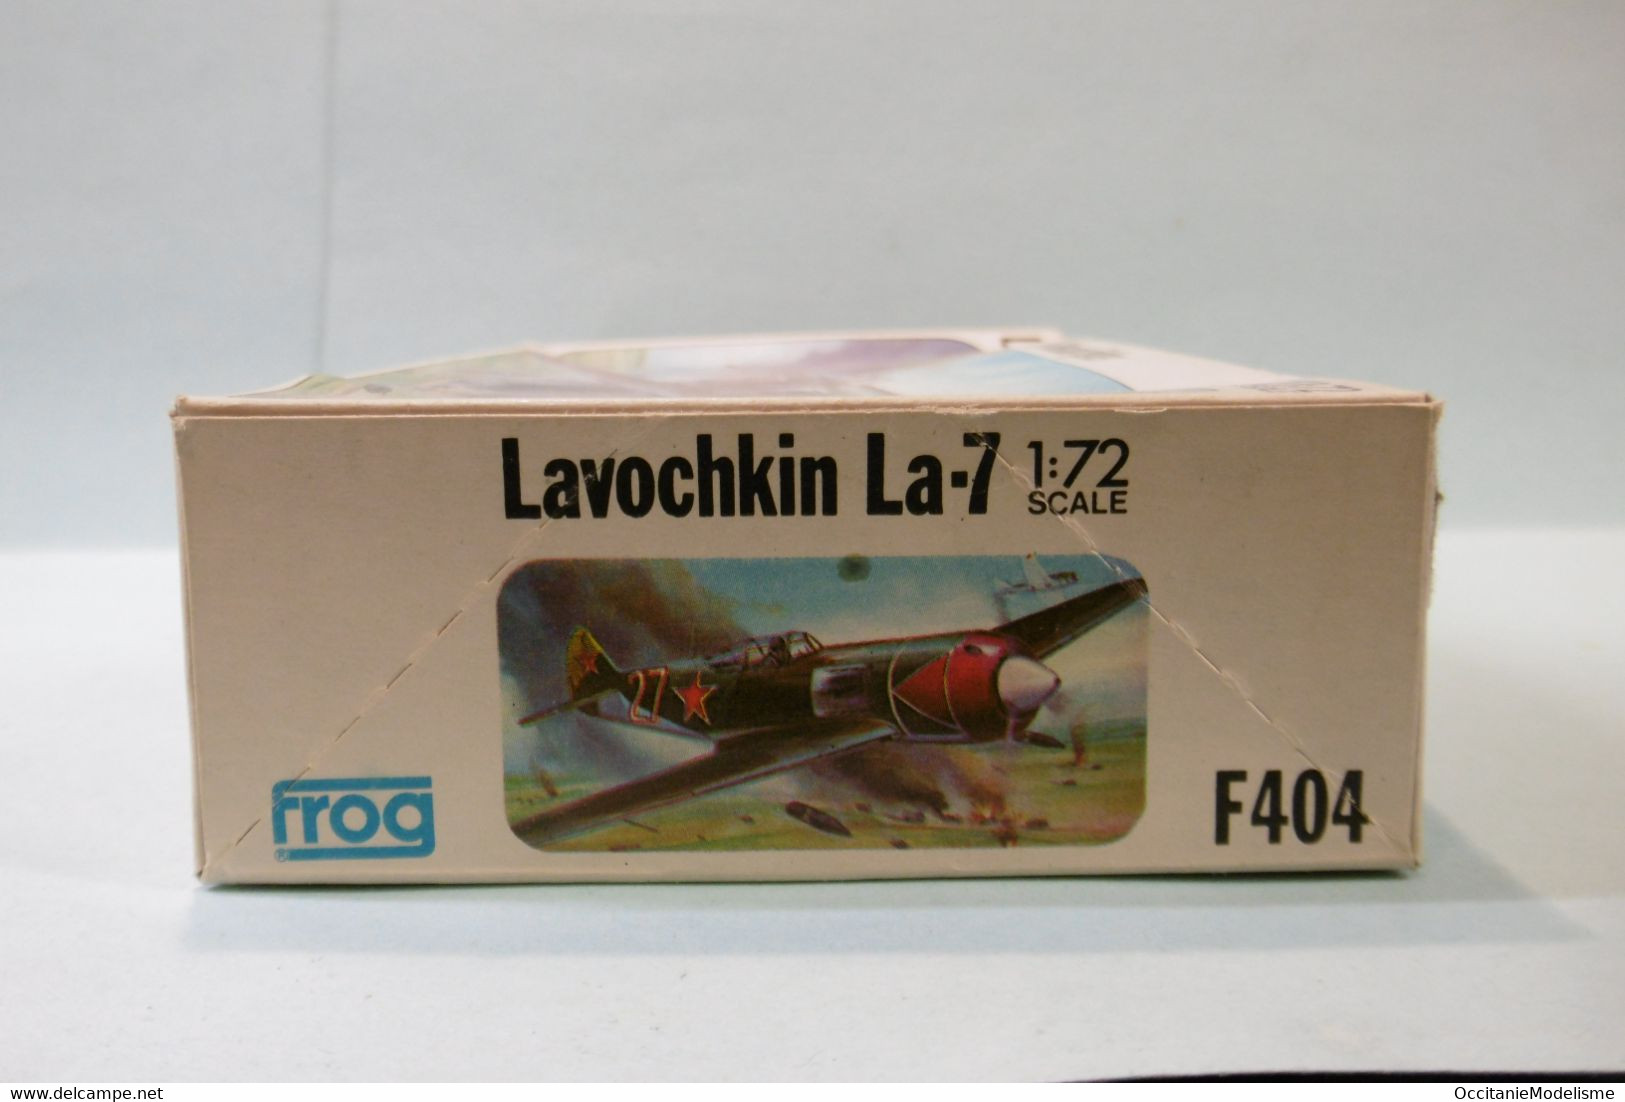 Frog - LAVOCHKIN La-7 Russian fighter maquette avion kit plastique réf. F404 BO 1/72